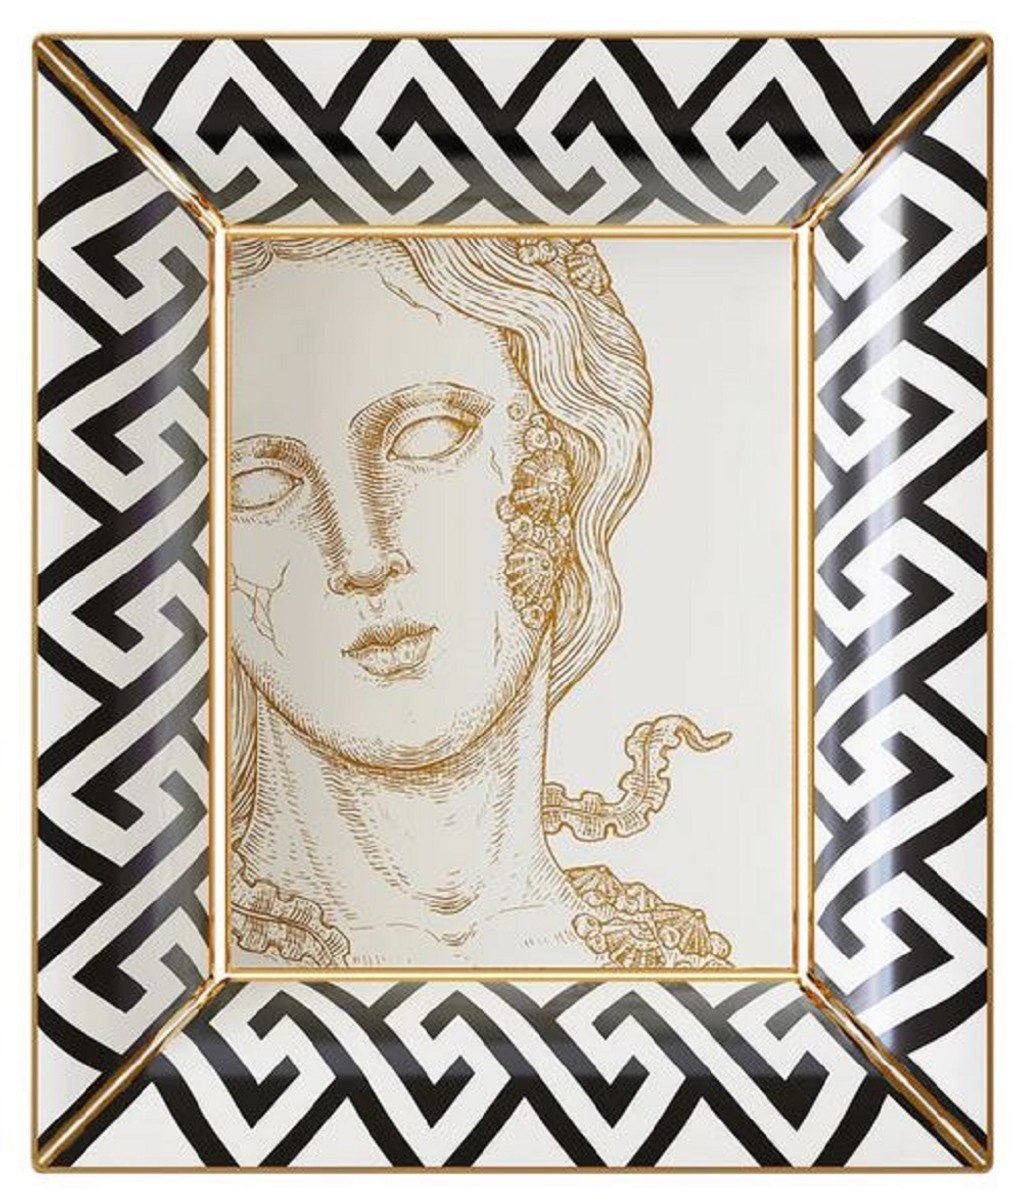 Casa Padrino Luxus Deko Schale Göttin Weiß / Schwarz / Gold 20,5 x 17,5 x H. 13,5 cm - Handbemalte Porzellan Schale - Luxus Qualität - Made in Italy